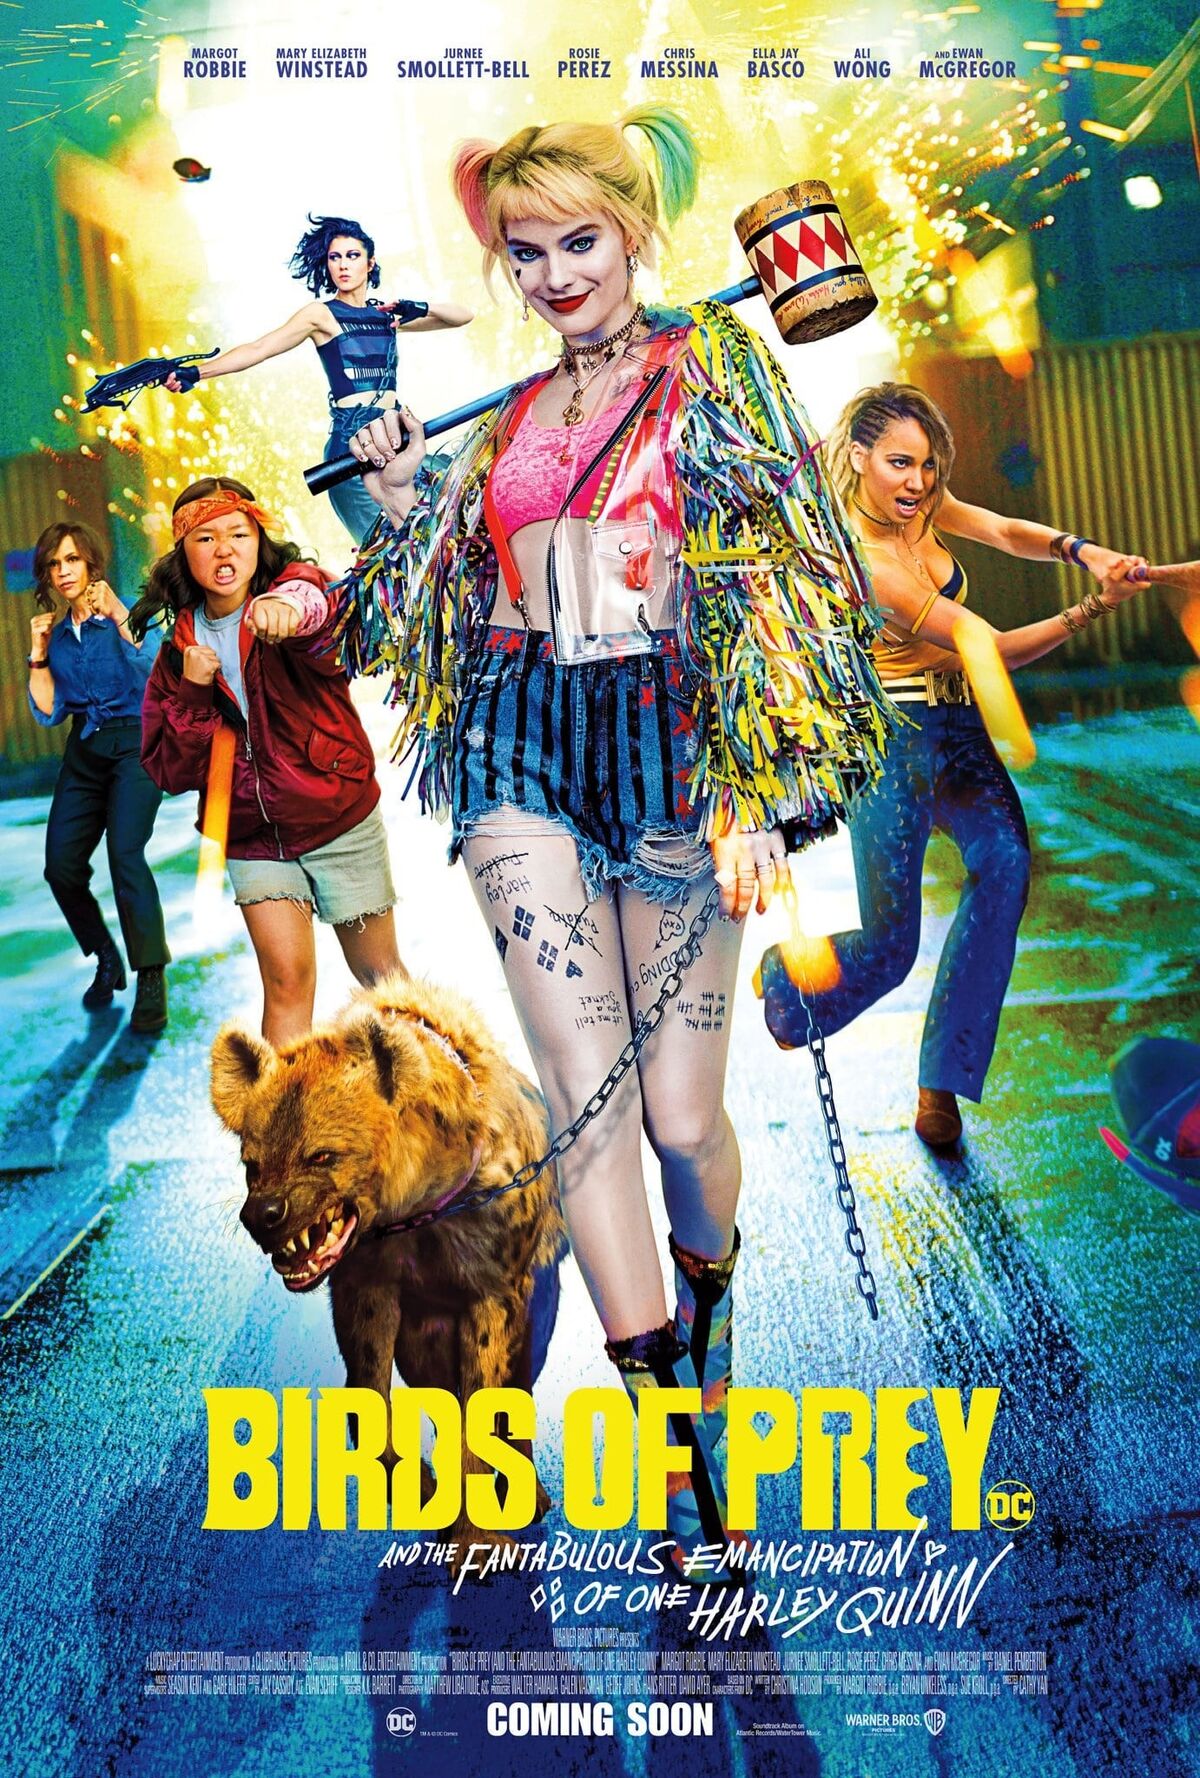 Mary Elizabeth Winstead & Jurnee Smollett-Bell cast in DC's Birds of Prey